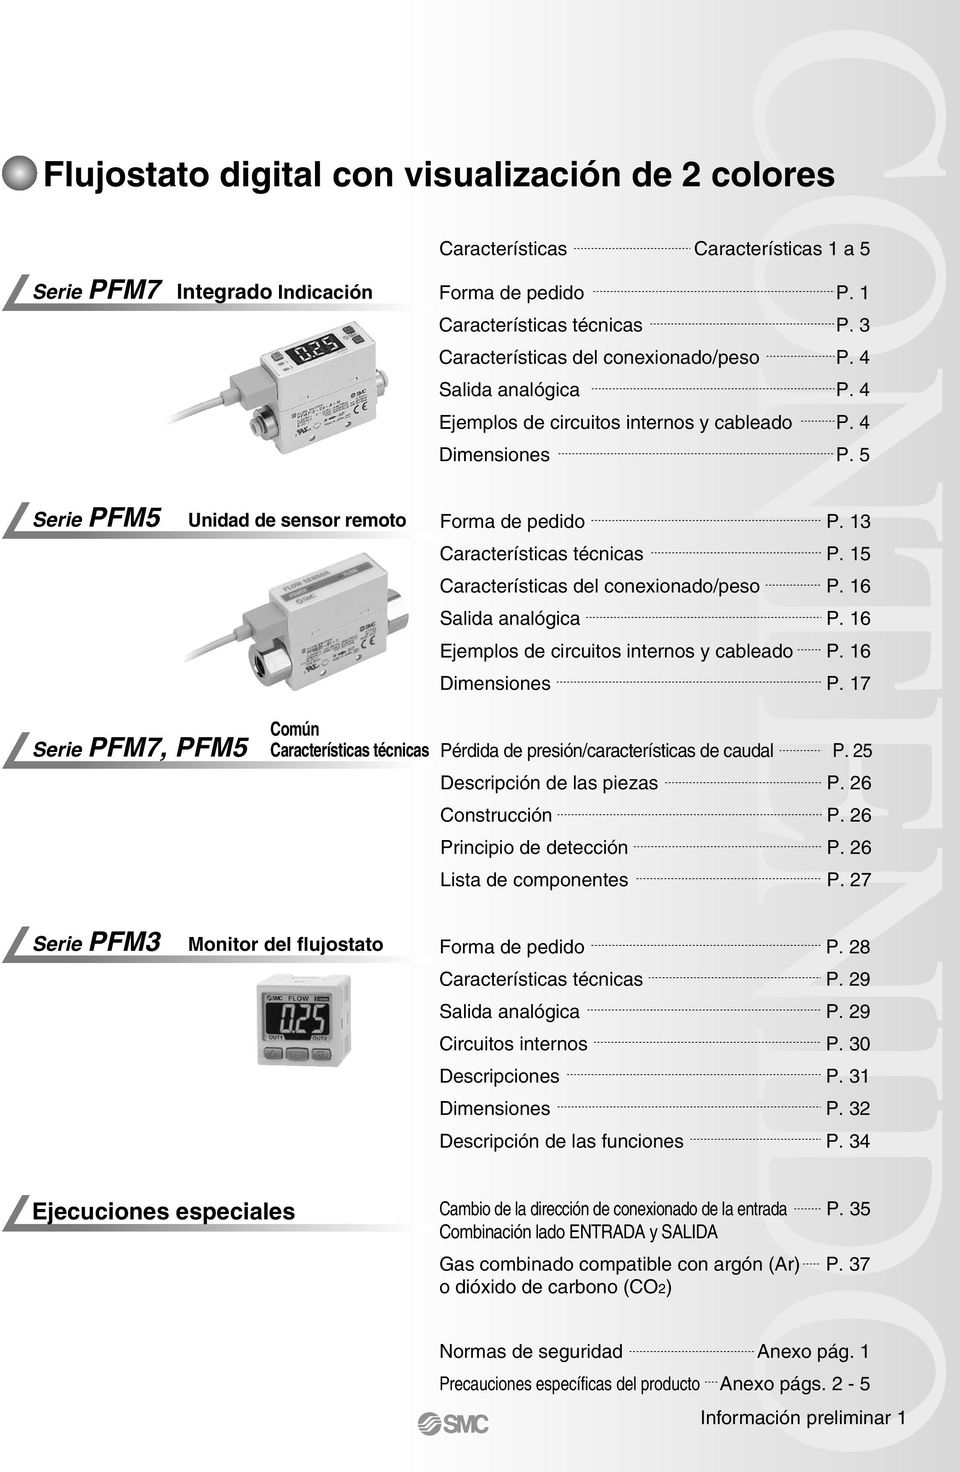 4 Ejemplos de circuitos internos y cableado P. 4 Dimensiones P. 5 Forma de pedido P. Características técnicas P. 5 Características del conexionado/peso P. 6 Salida analógica P.